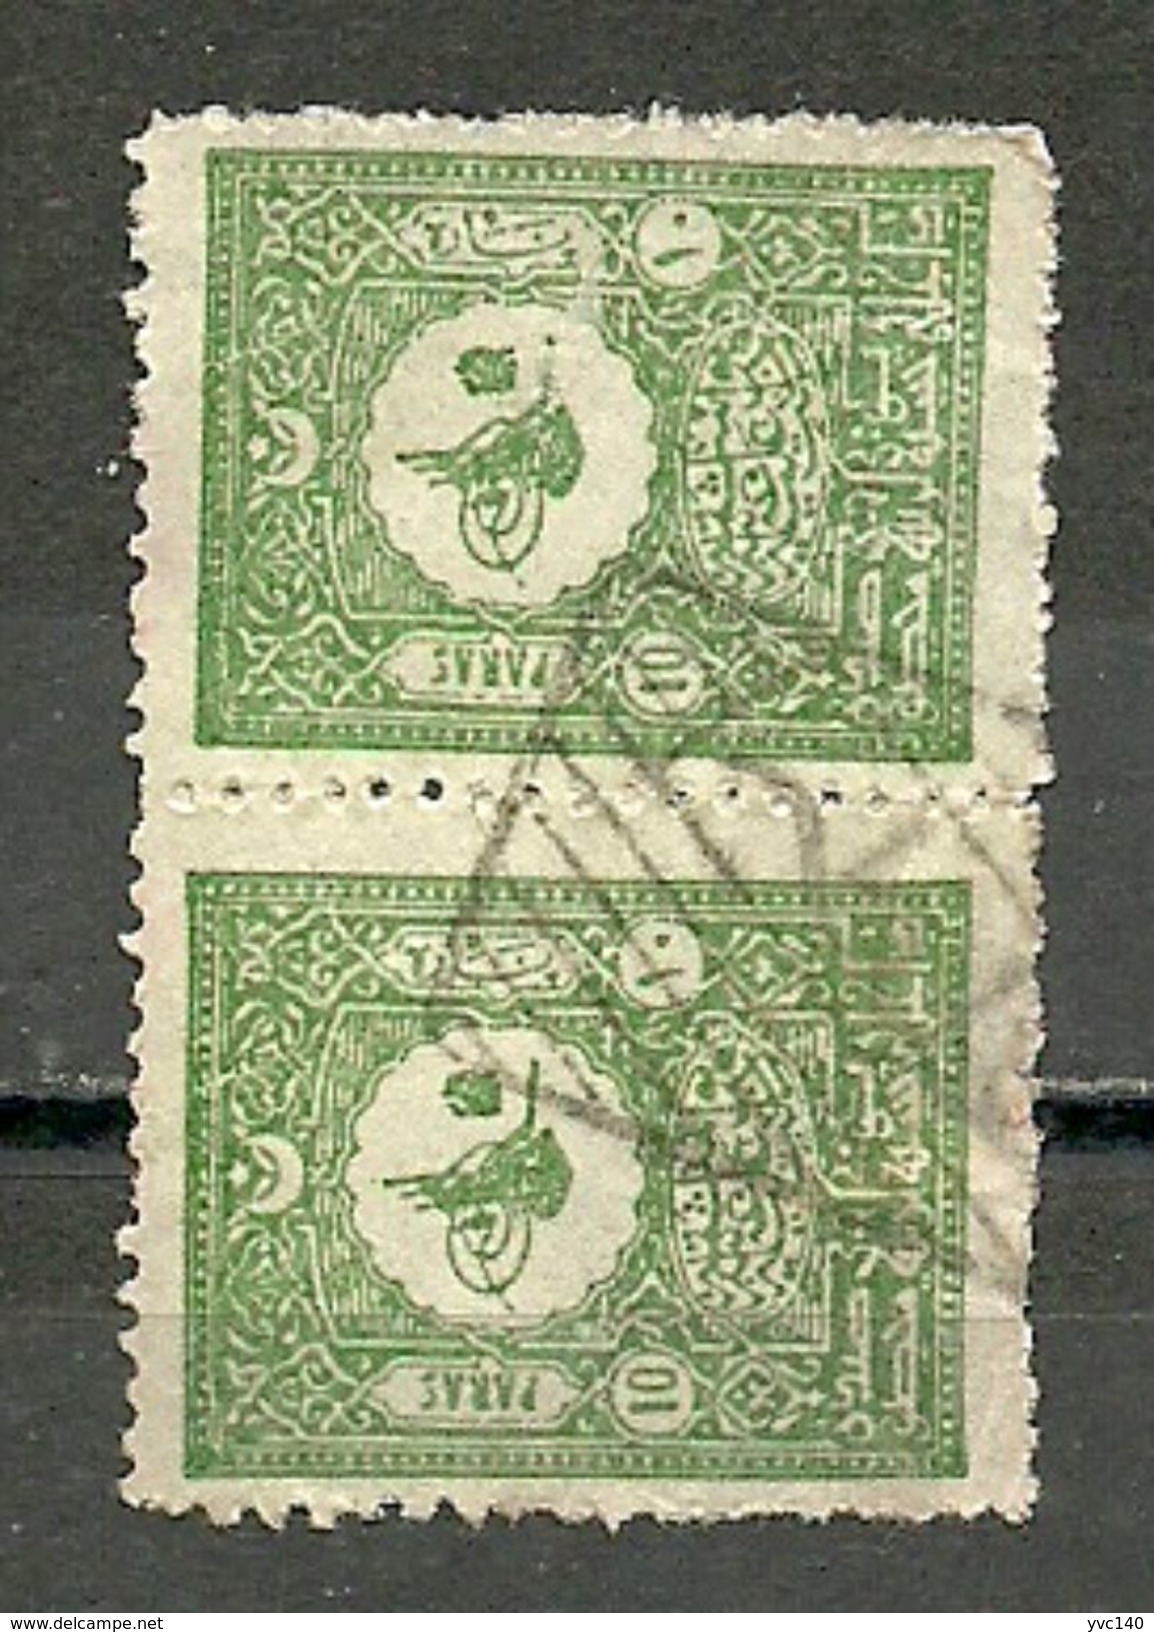 Turkey; 1901 Postage Stamp 10 P., "Galata" Postmark Rare - Gebraucht